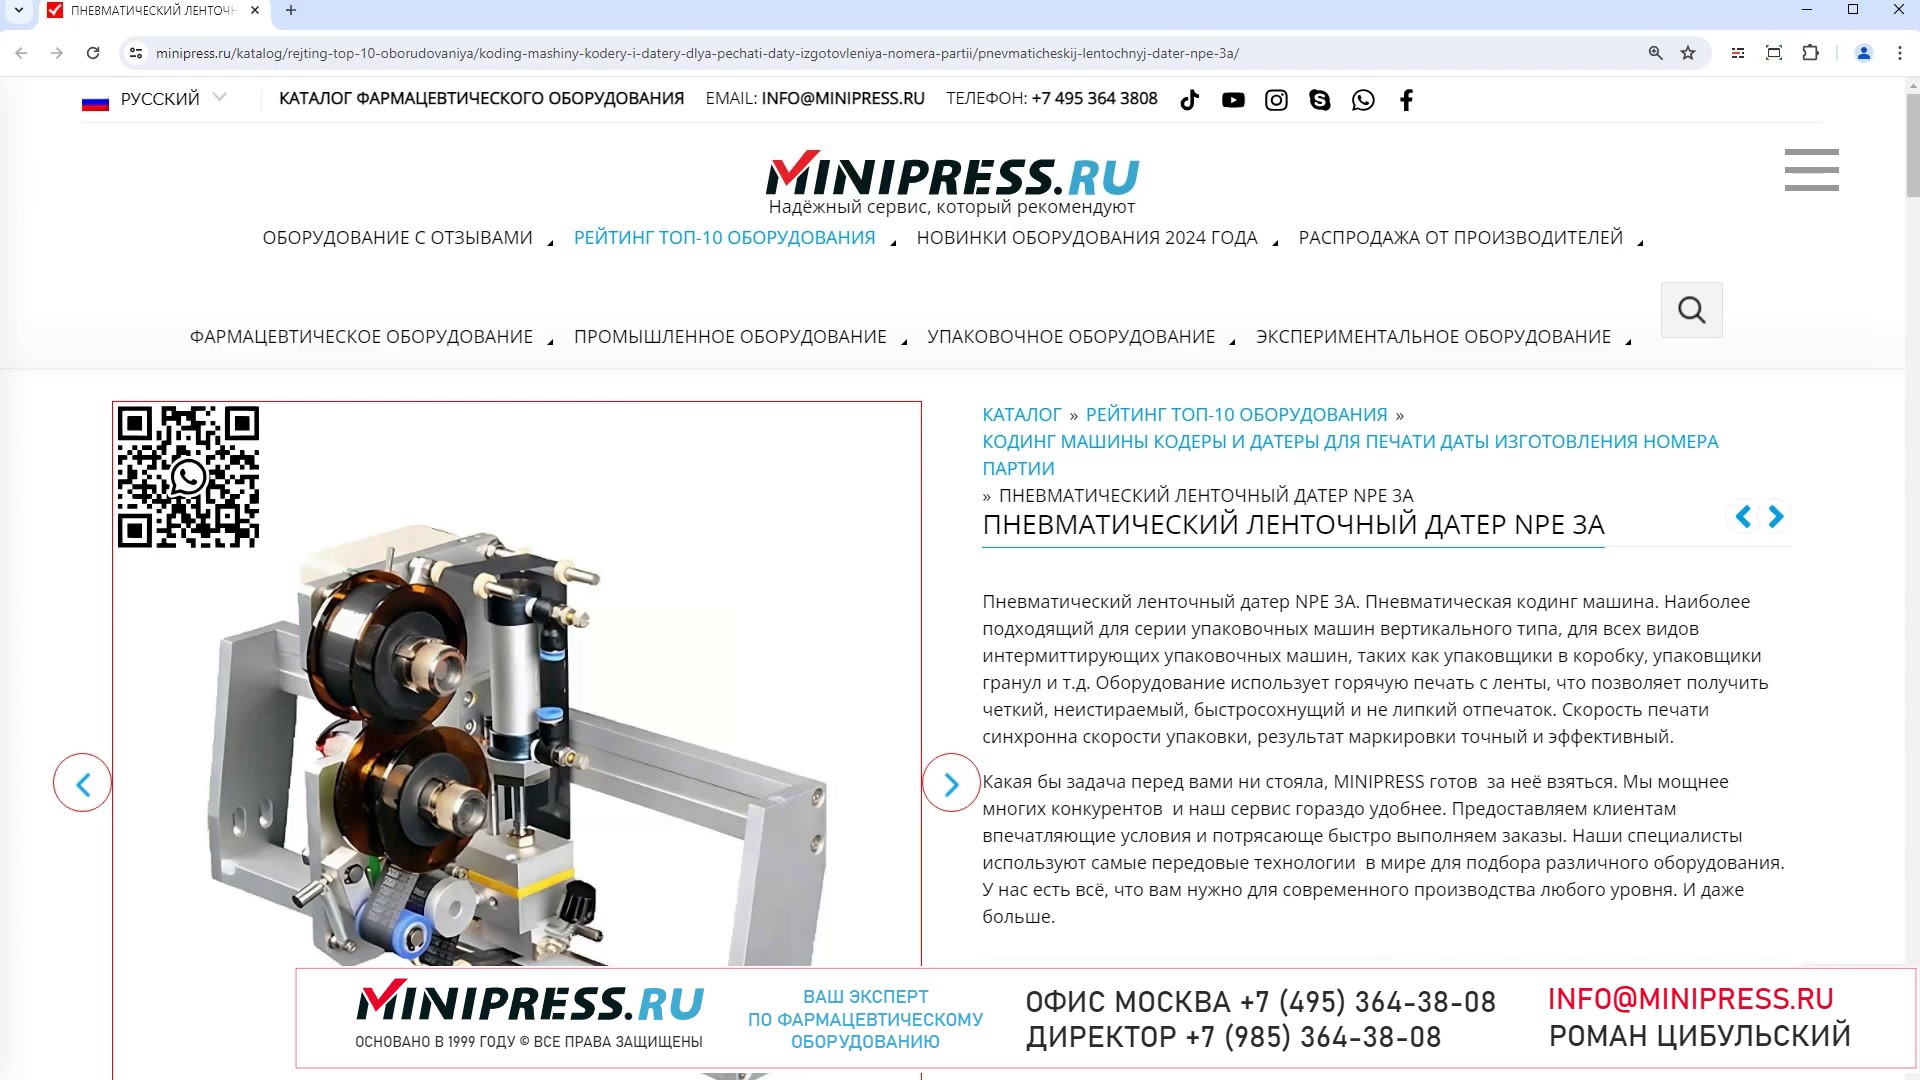 Minipress.ru Пневматический ленточный датер NPE 3A